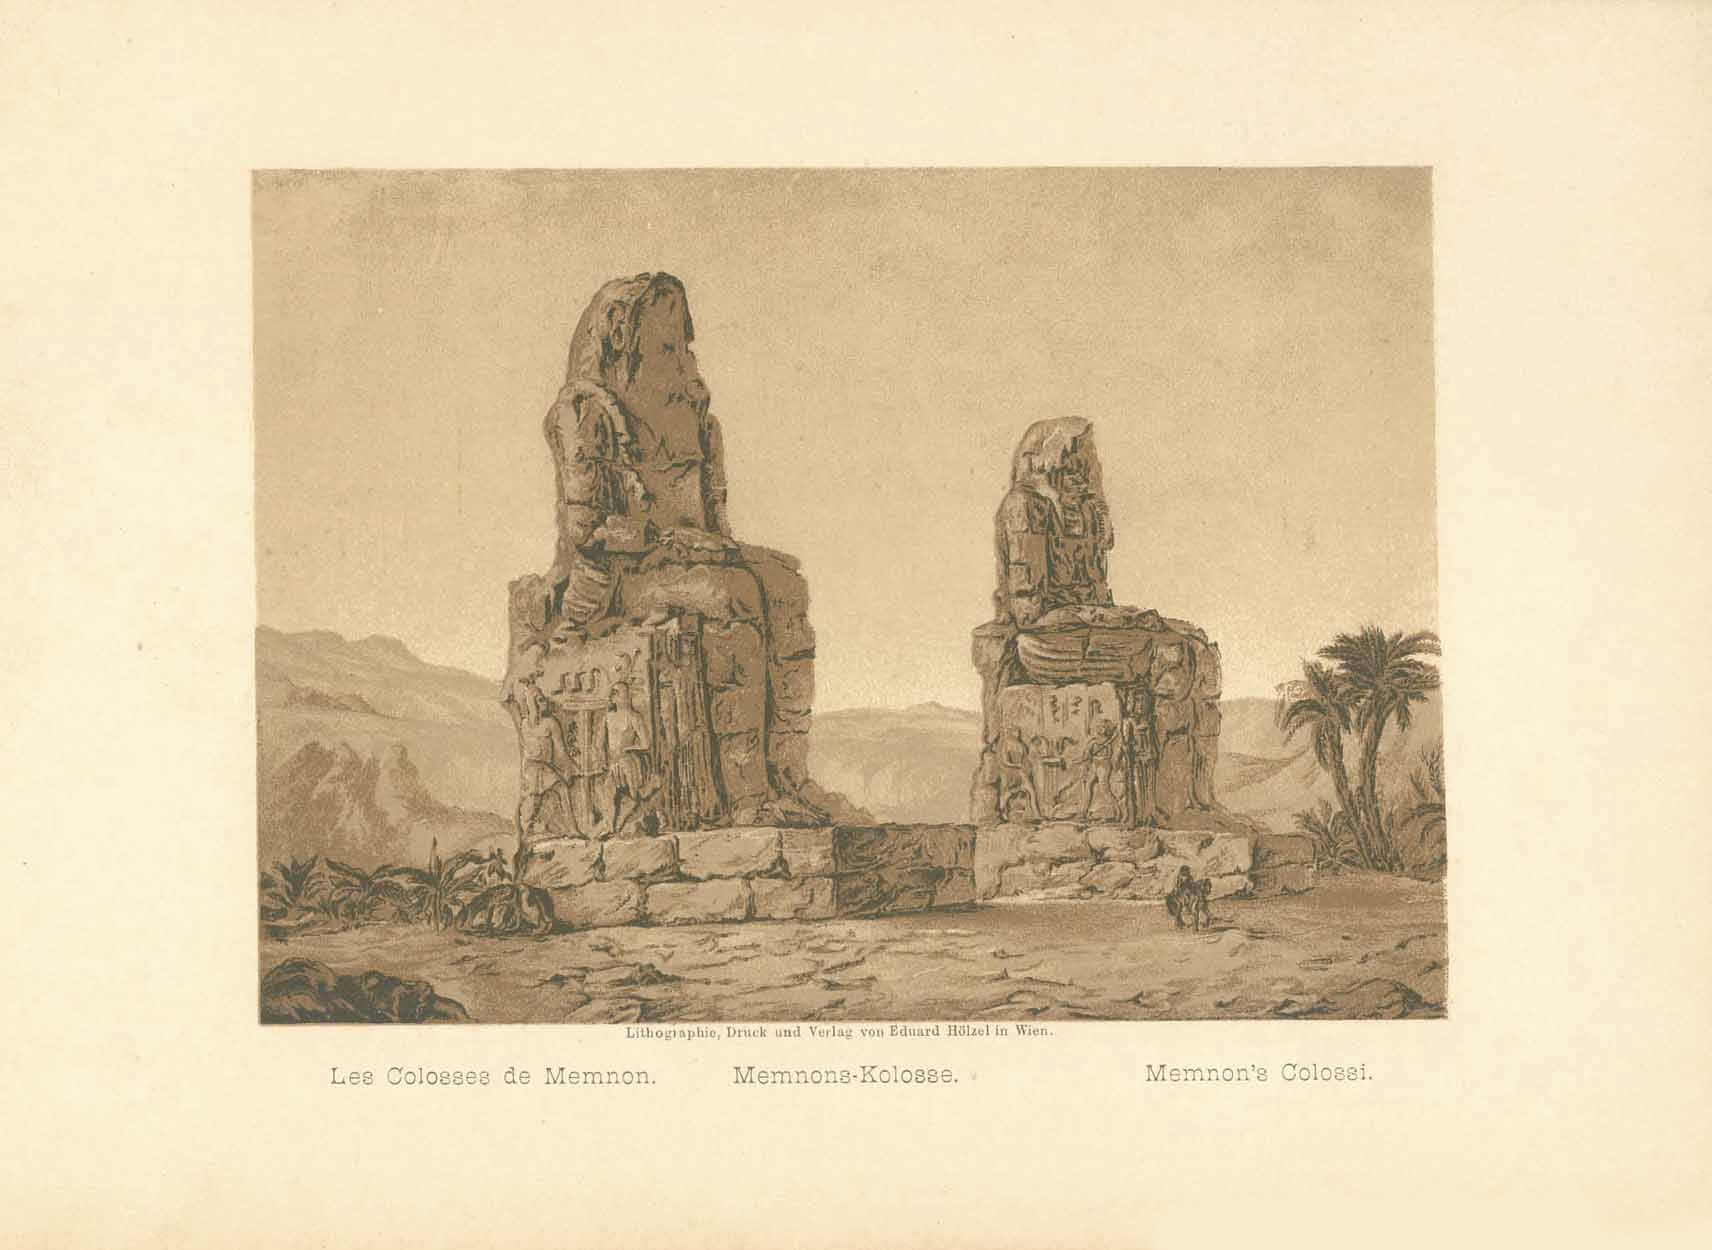 "Les Colosses de Memnon. Memnones-Kolosse, Memnon's Colossi."  Anonymous lithograph printed in a very pleasant sepia tone. Published 1889.  Original antique print  